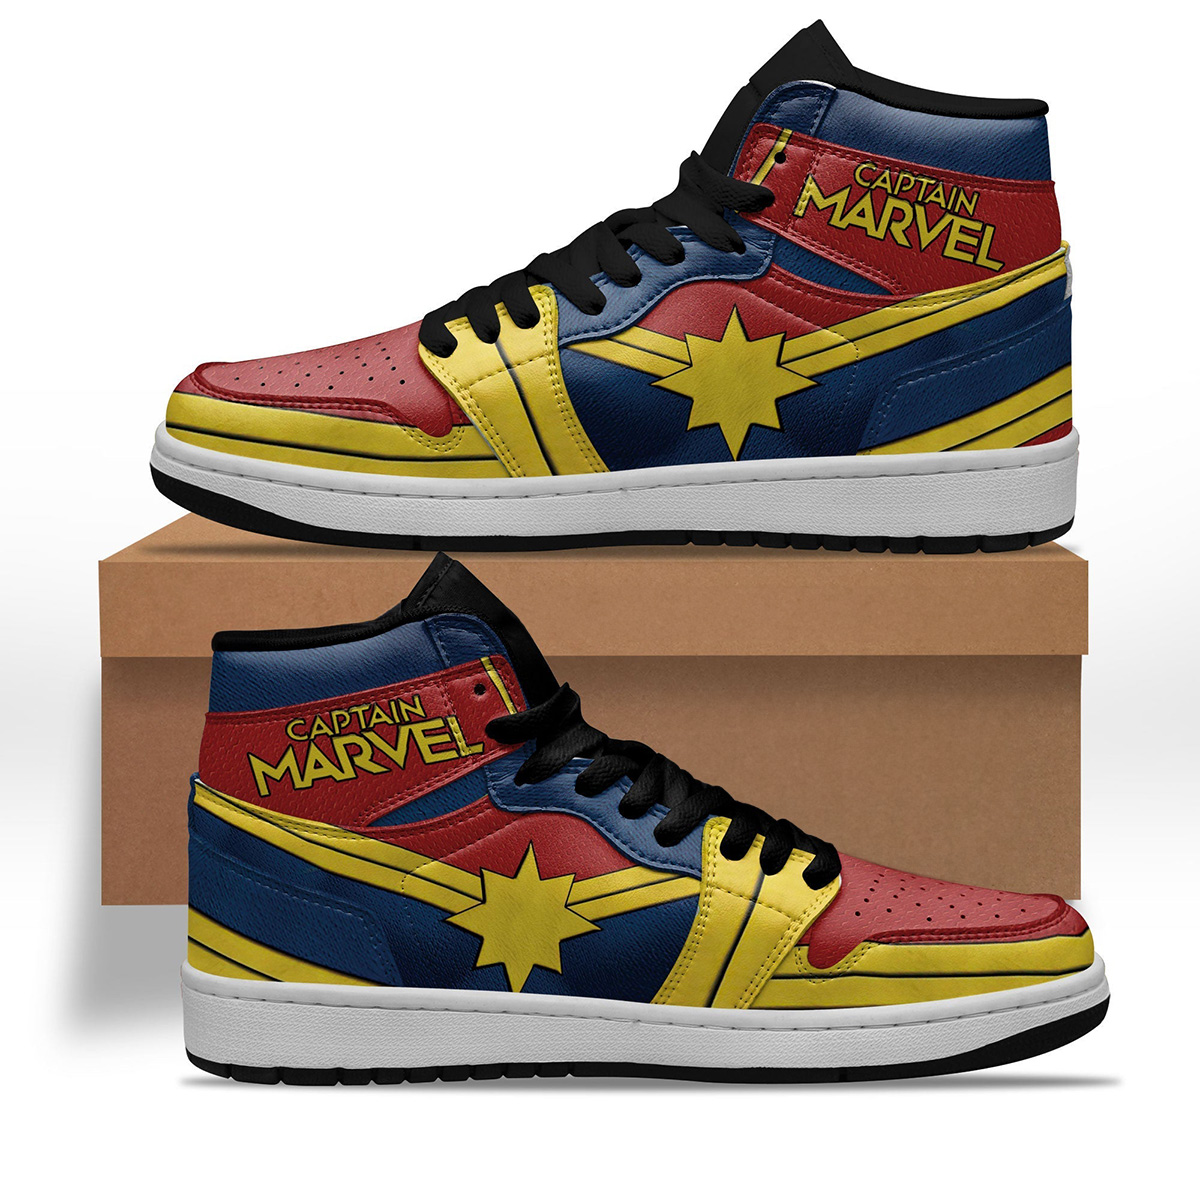 Avenger Captain Marvel Shoes Custom